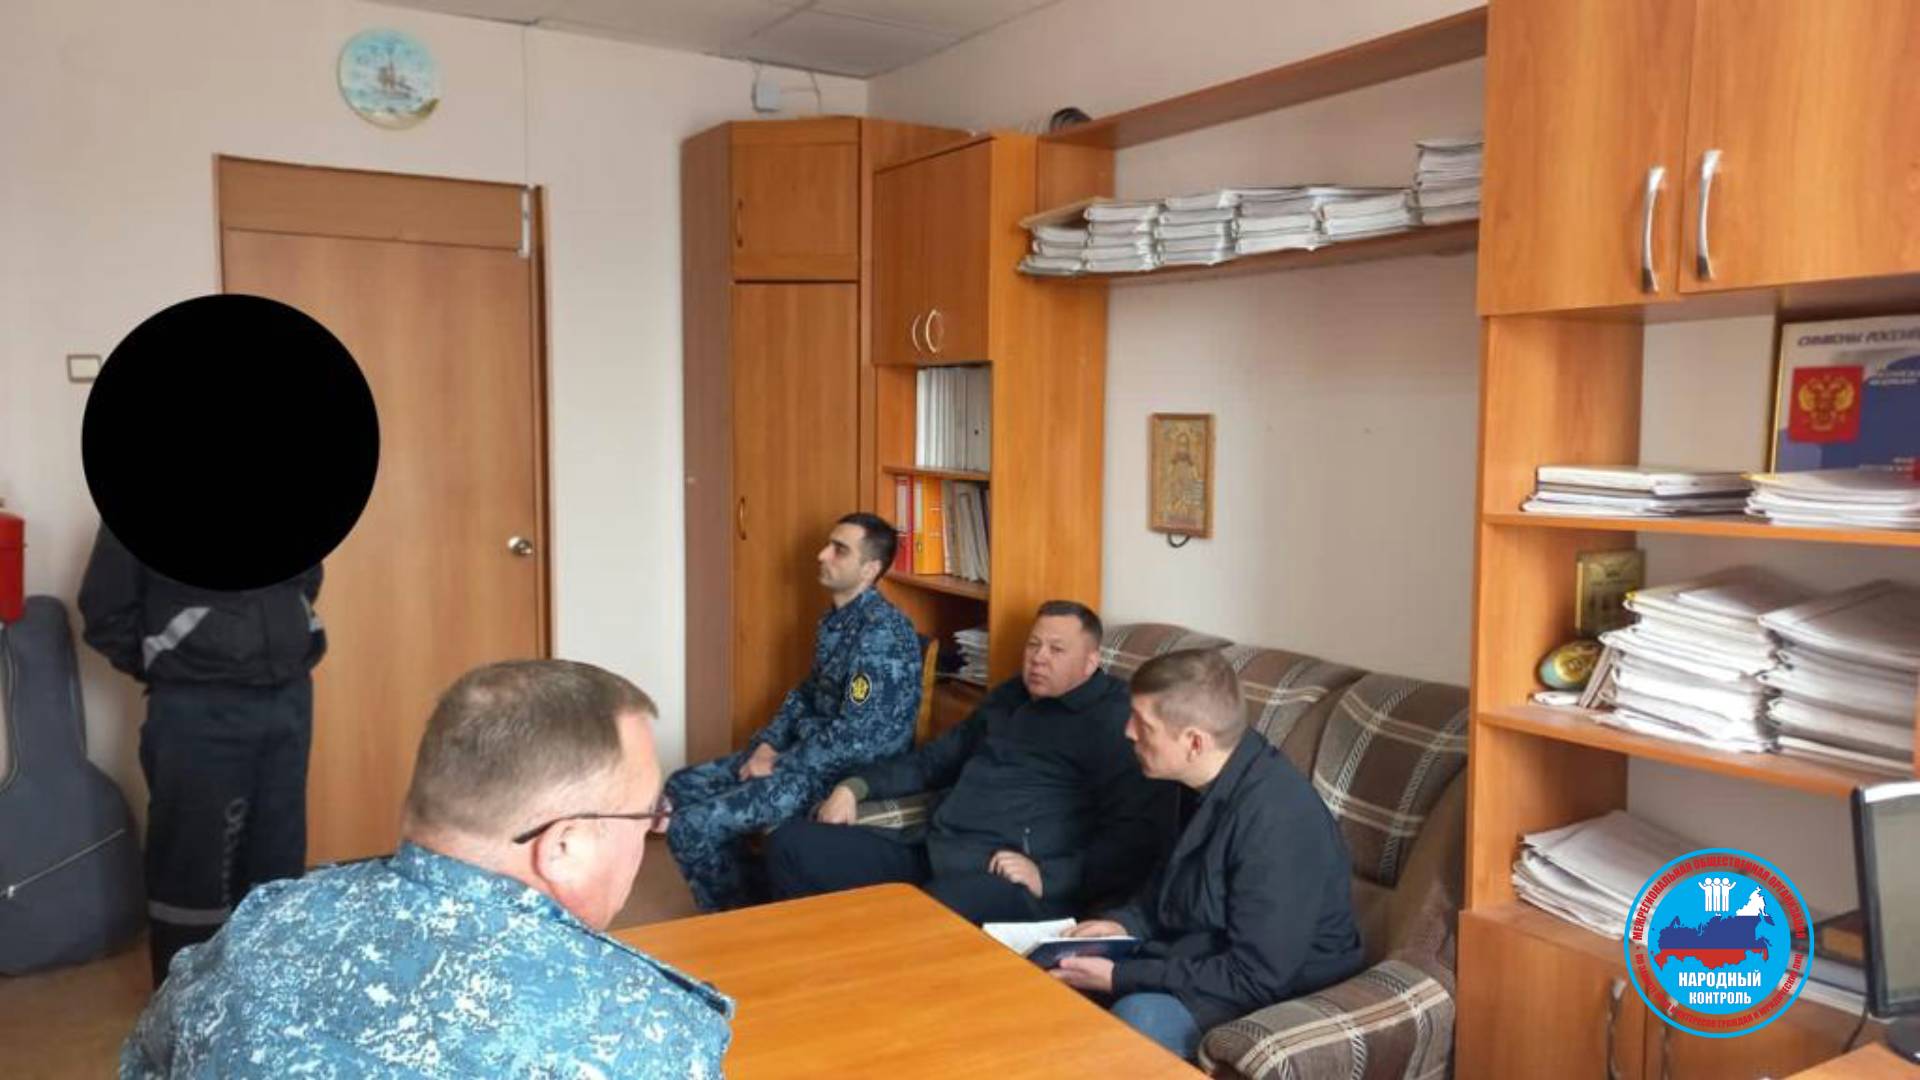 Посещение исправительного учреждения КП-59 в Каменске-Уральском членами ОНК